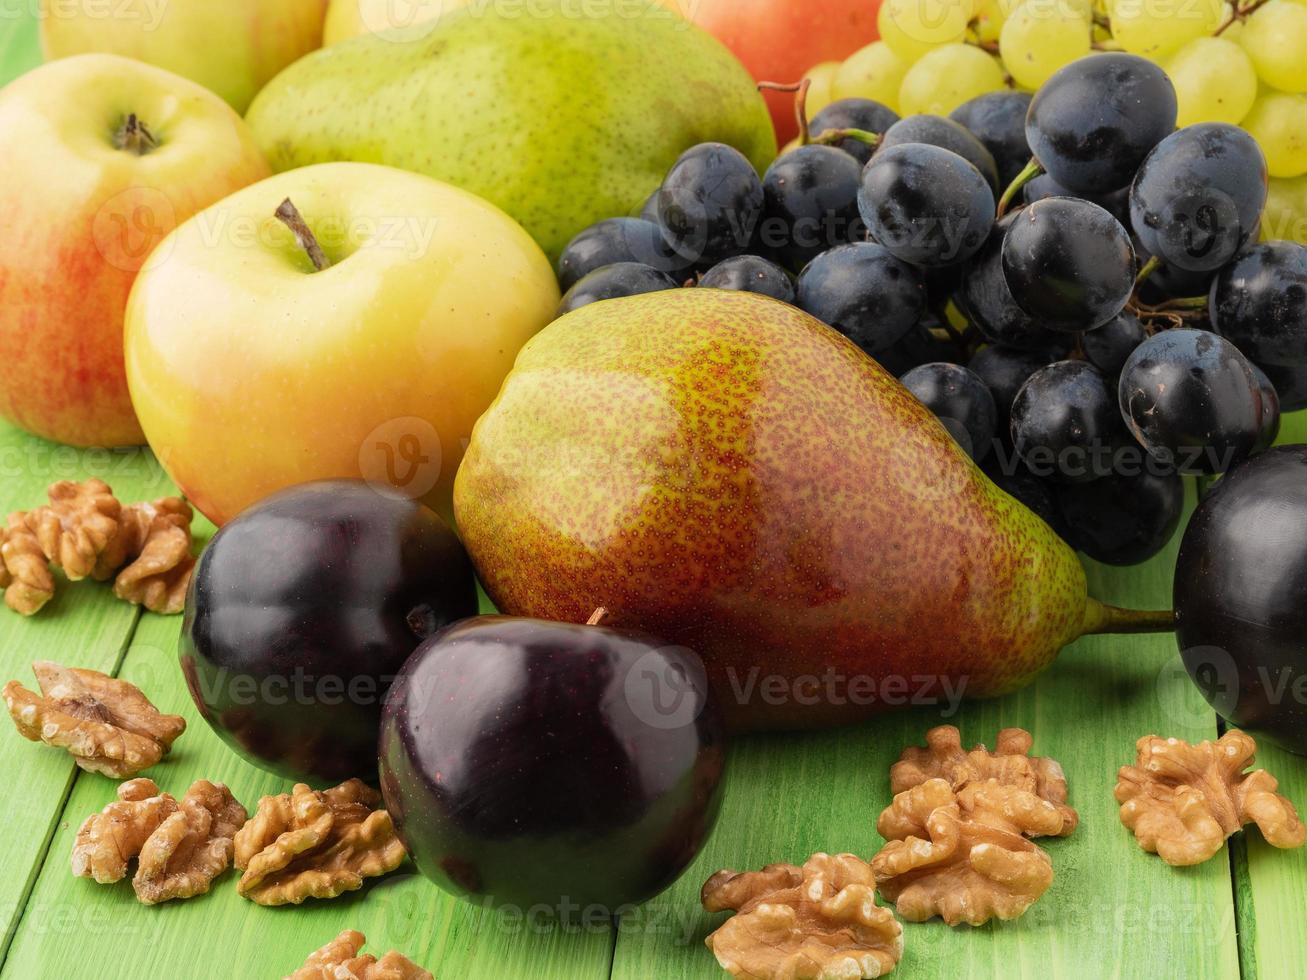 Satz Früchte auf einem grünen Holztisch - Äpfel, Birnen, Trauben, Pflaumen, Walnüsse foto